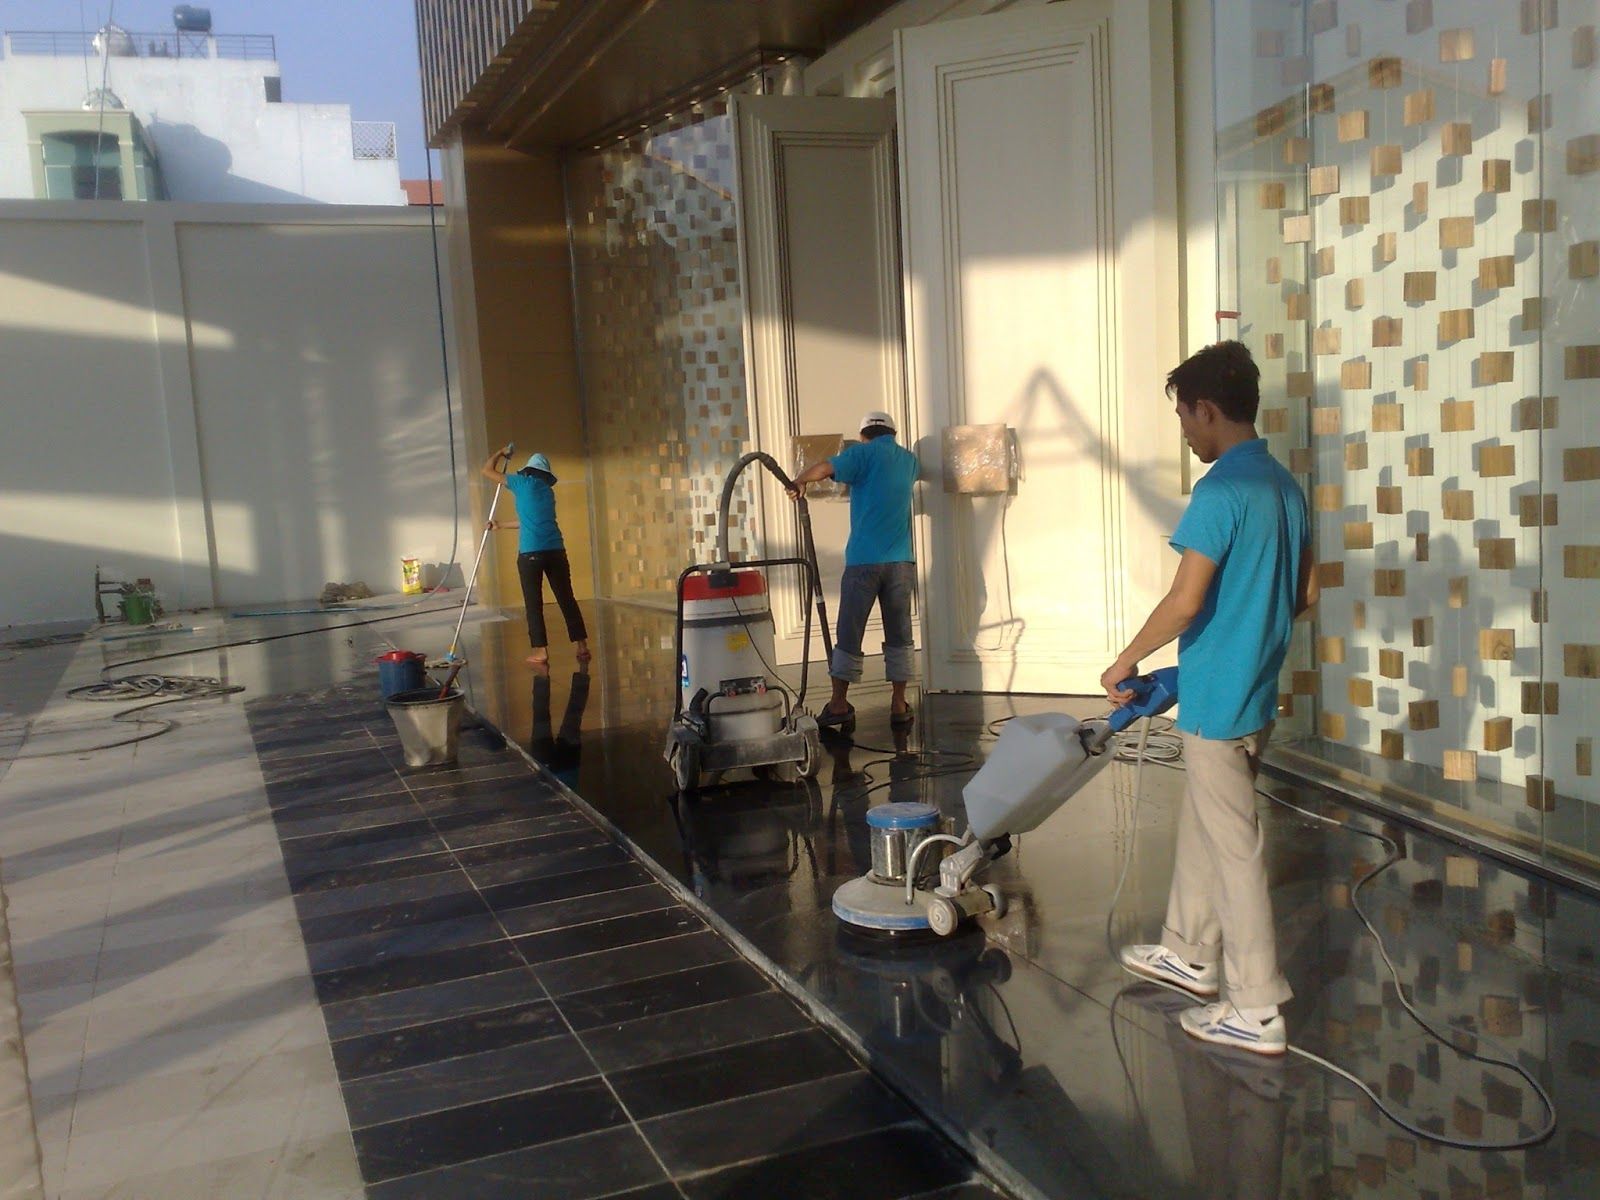 Sử dụng - Bảo dưỡng máy chà sàn trong công việc vệ sinh hiệu quả tốt